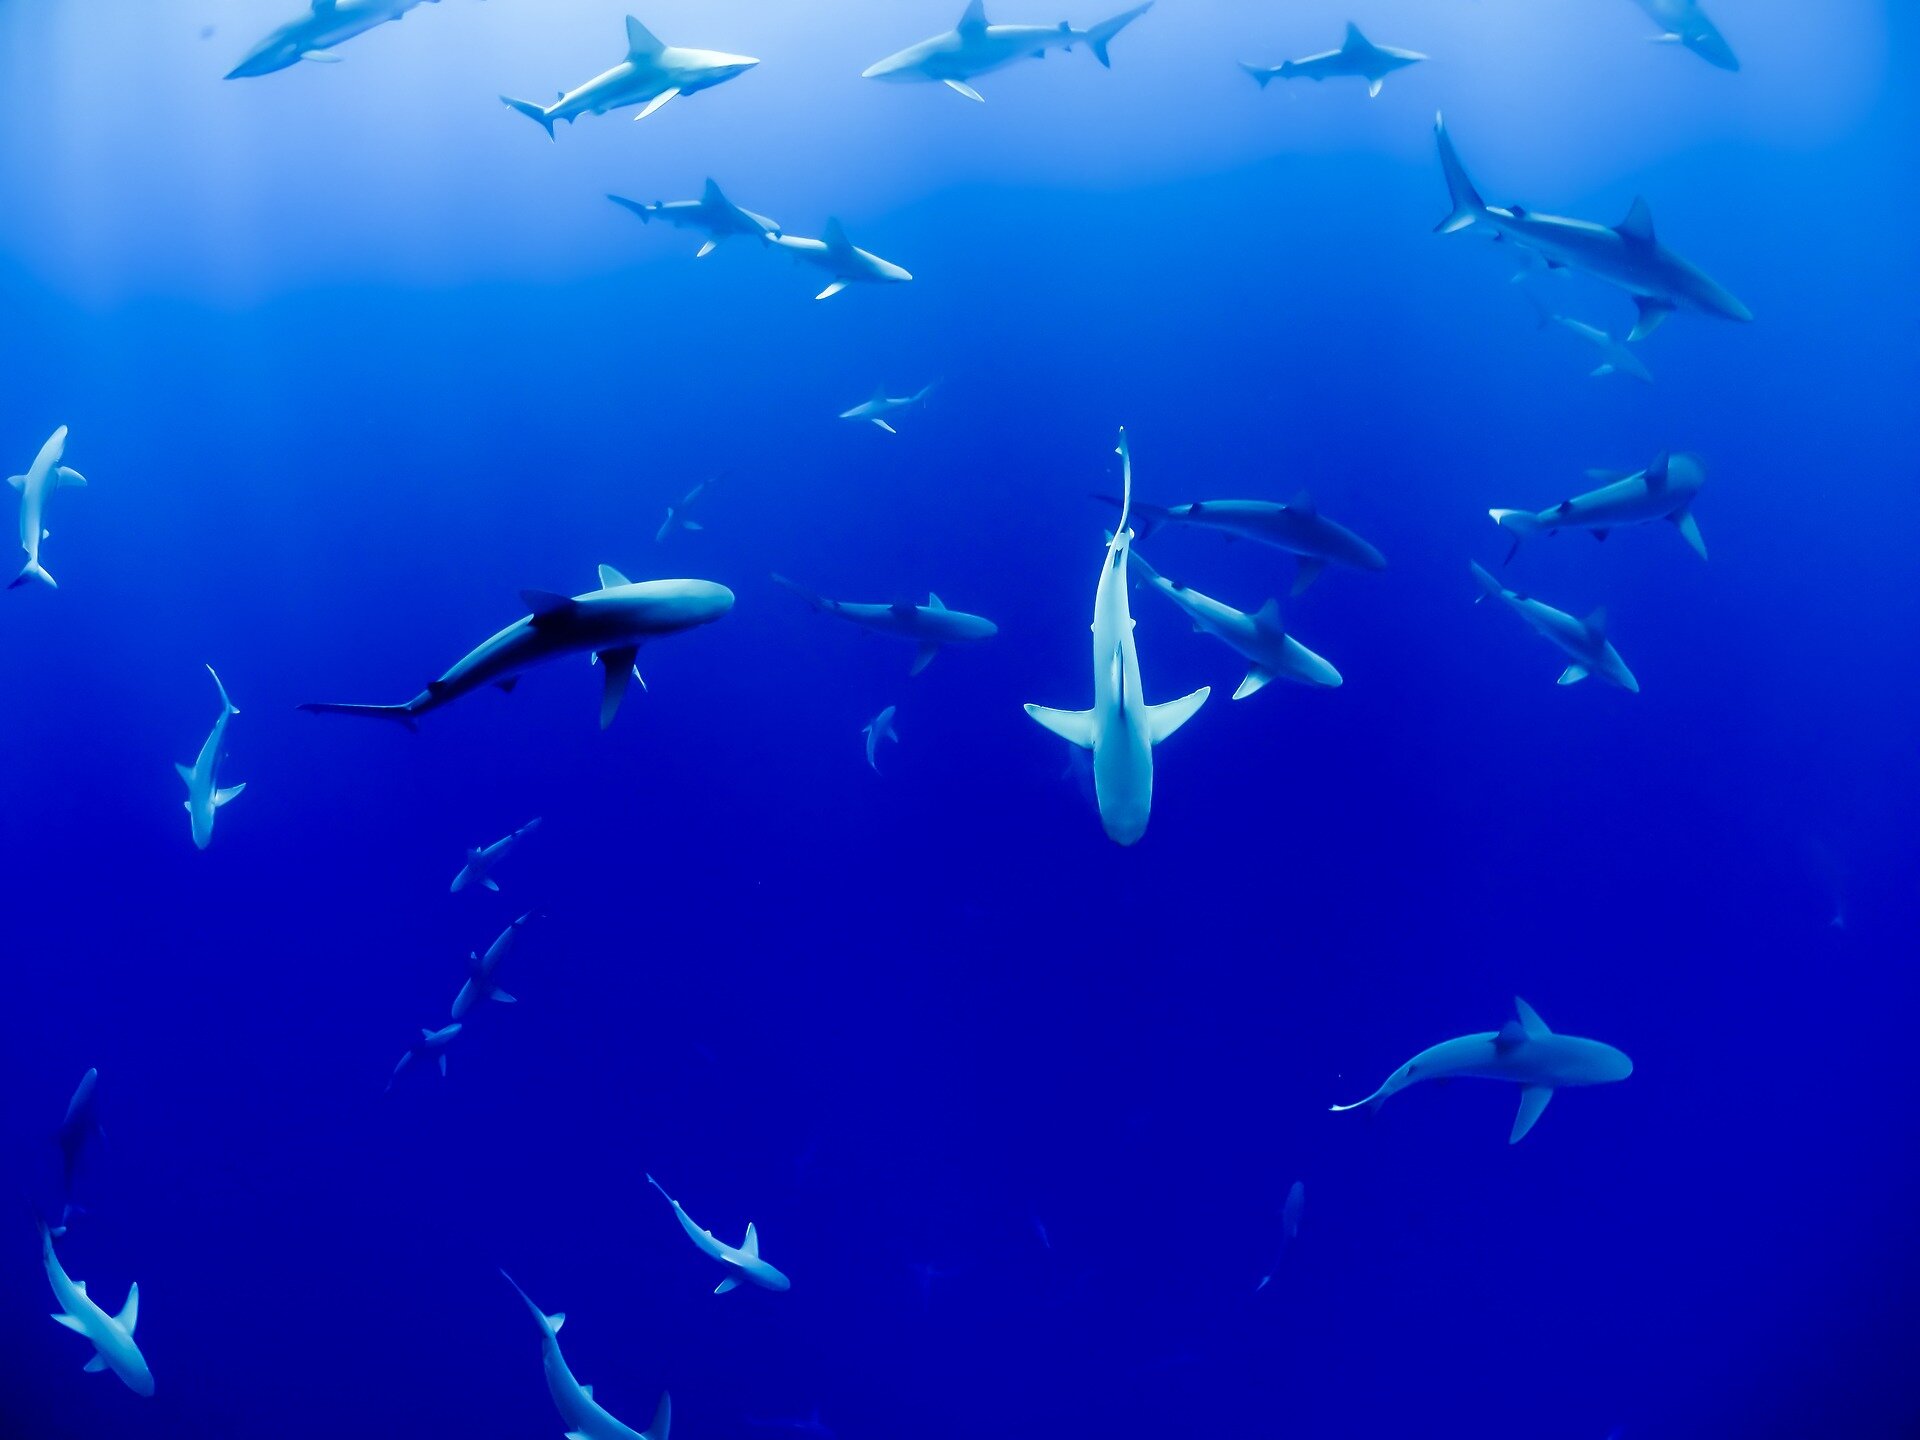 Monster shark movies harm shark conservation efforts